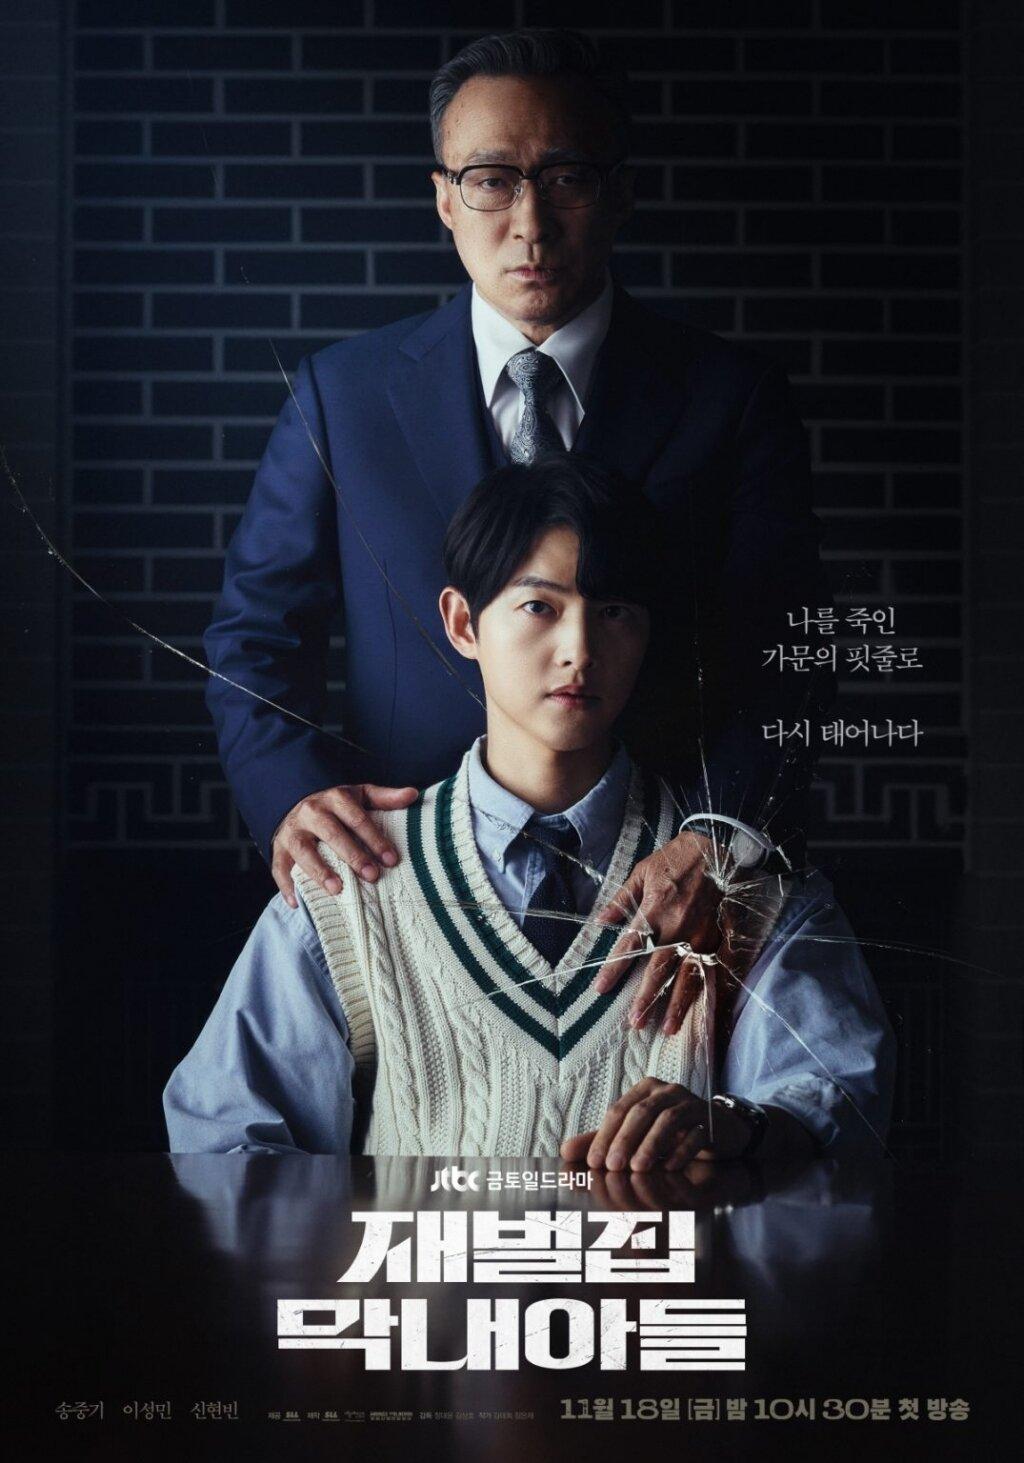 Reborn Rich trở thành bộ phim ăn khách nhất màn ảnh nhỏ Hàn Quốc năm nay